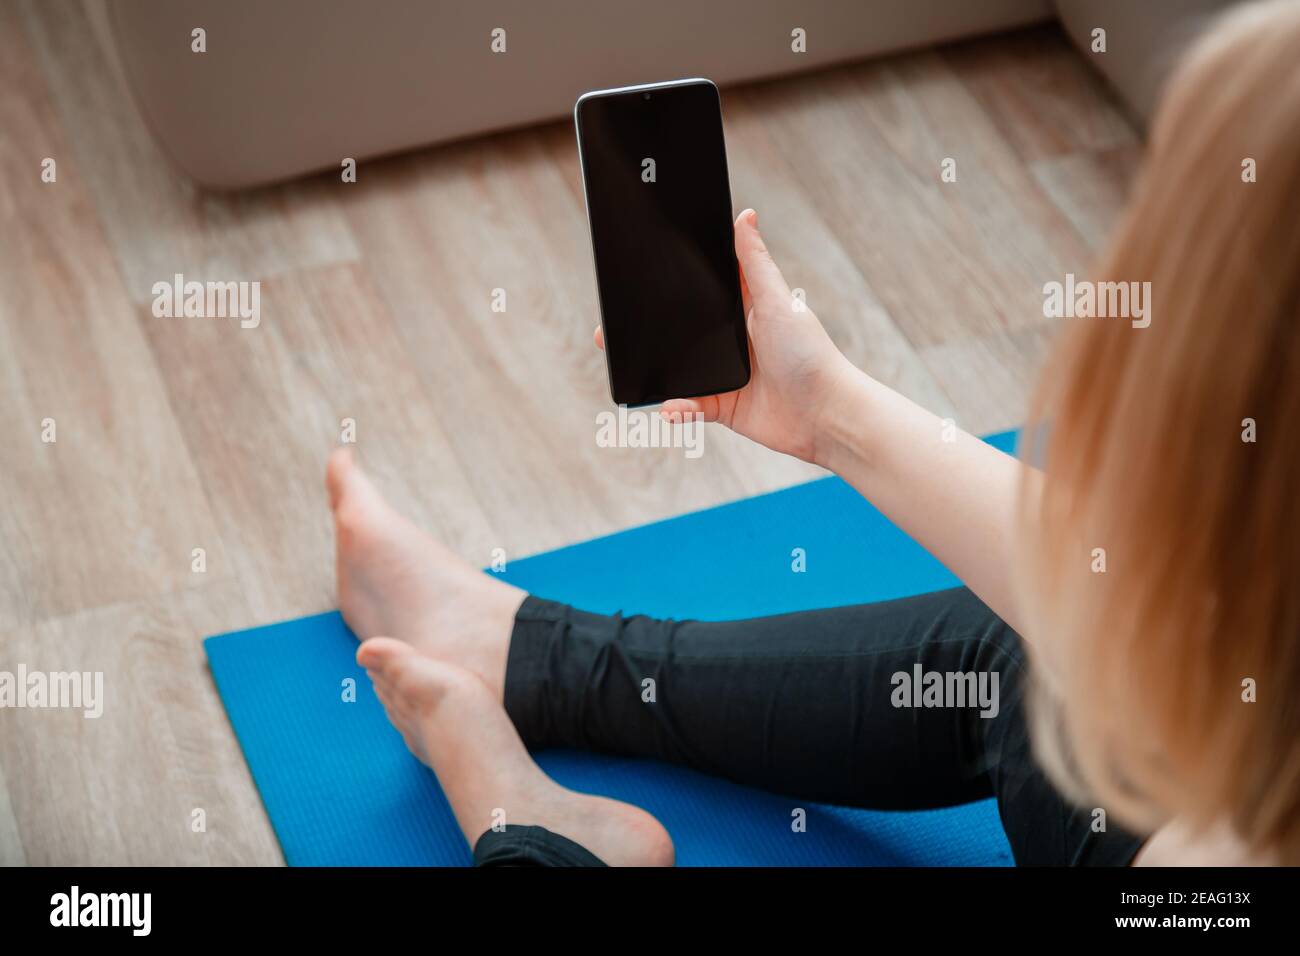 Mockup für App Online-Fitness-Programm, Remote Yoga-Klasse. Frau in Sportswear hält Smartphone mit leerem Bildschirm für Sport oder Musik App während ein Stockfoto